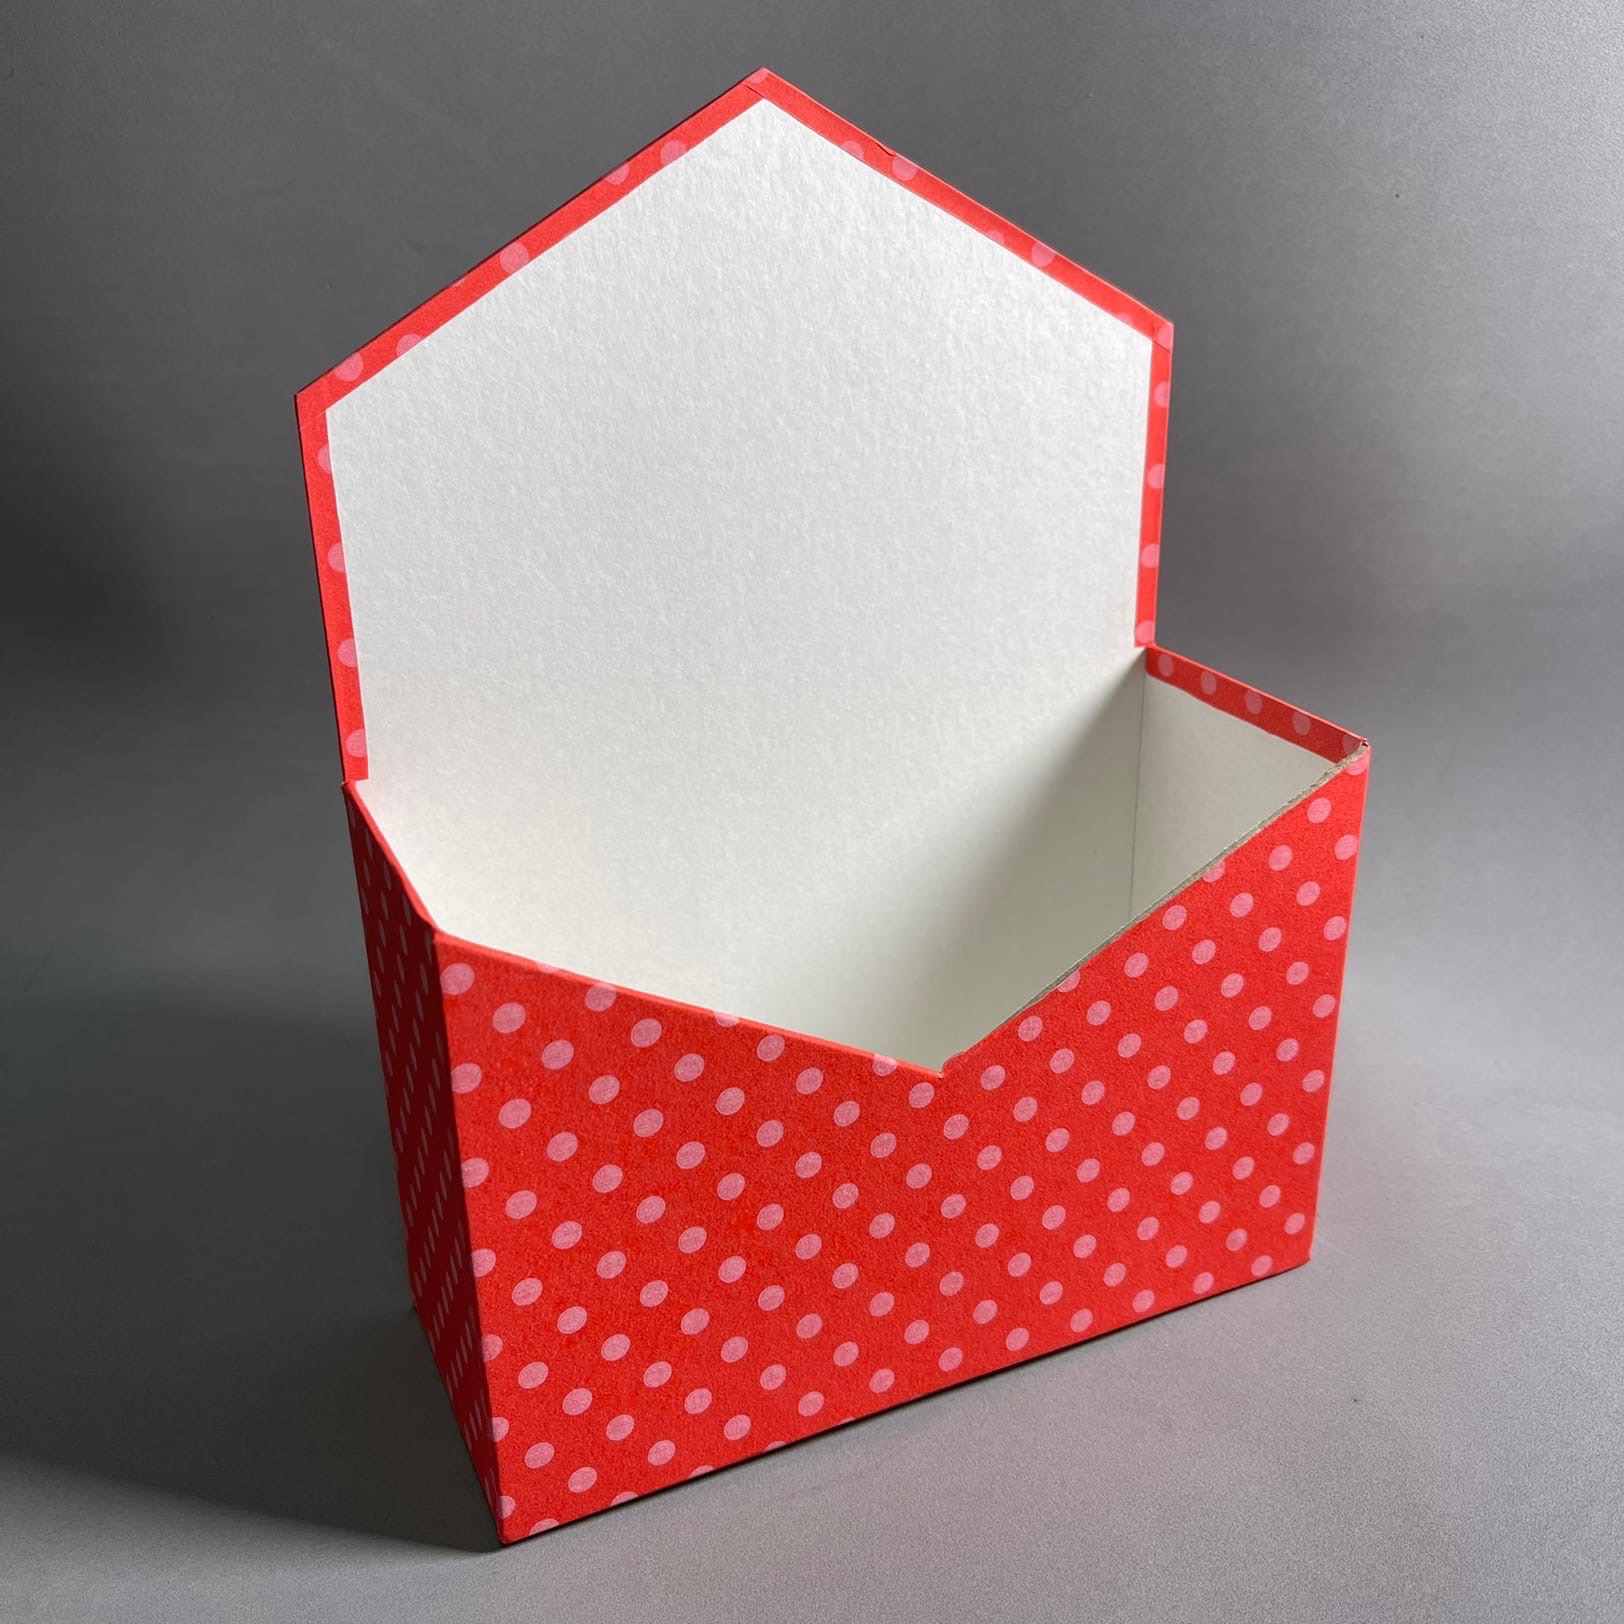 Как сделать круглую коробочку из картона своими руками — схема и видео